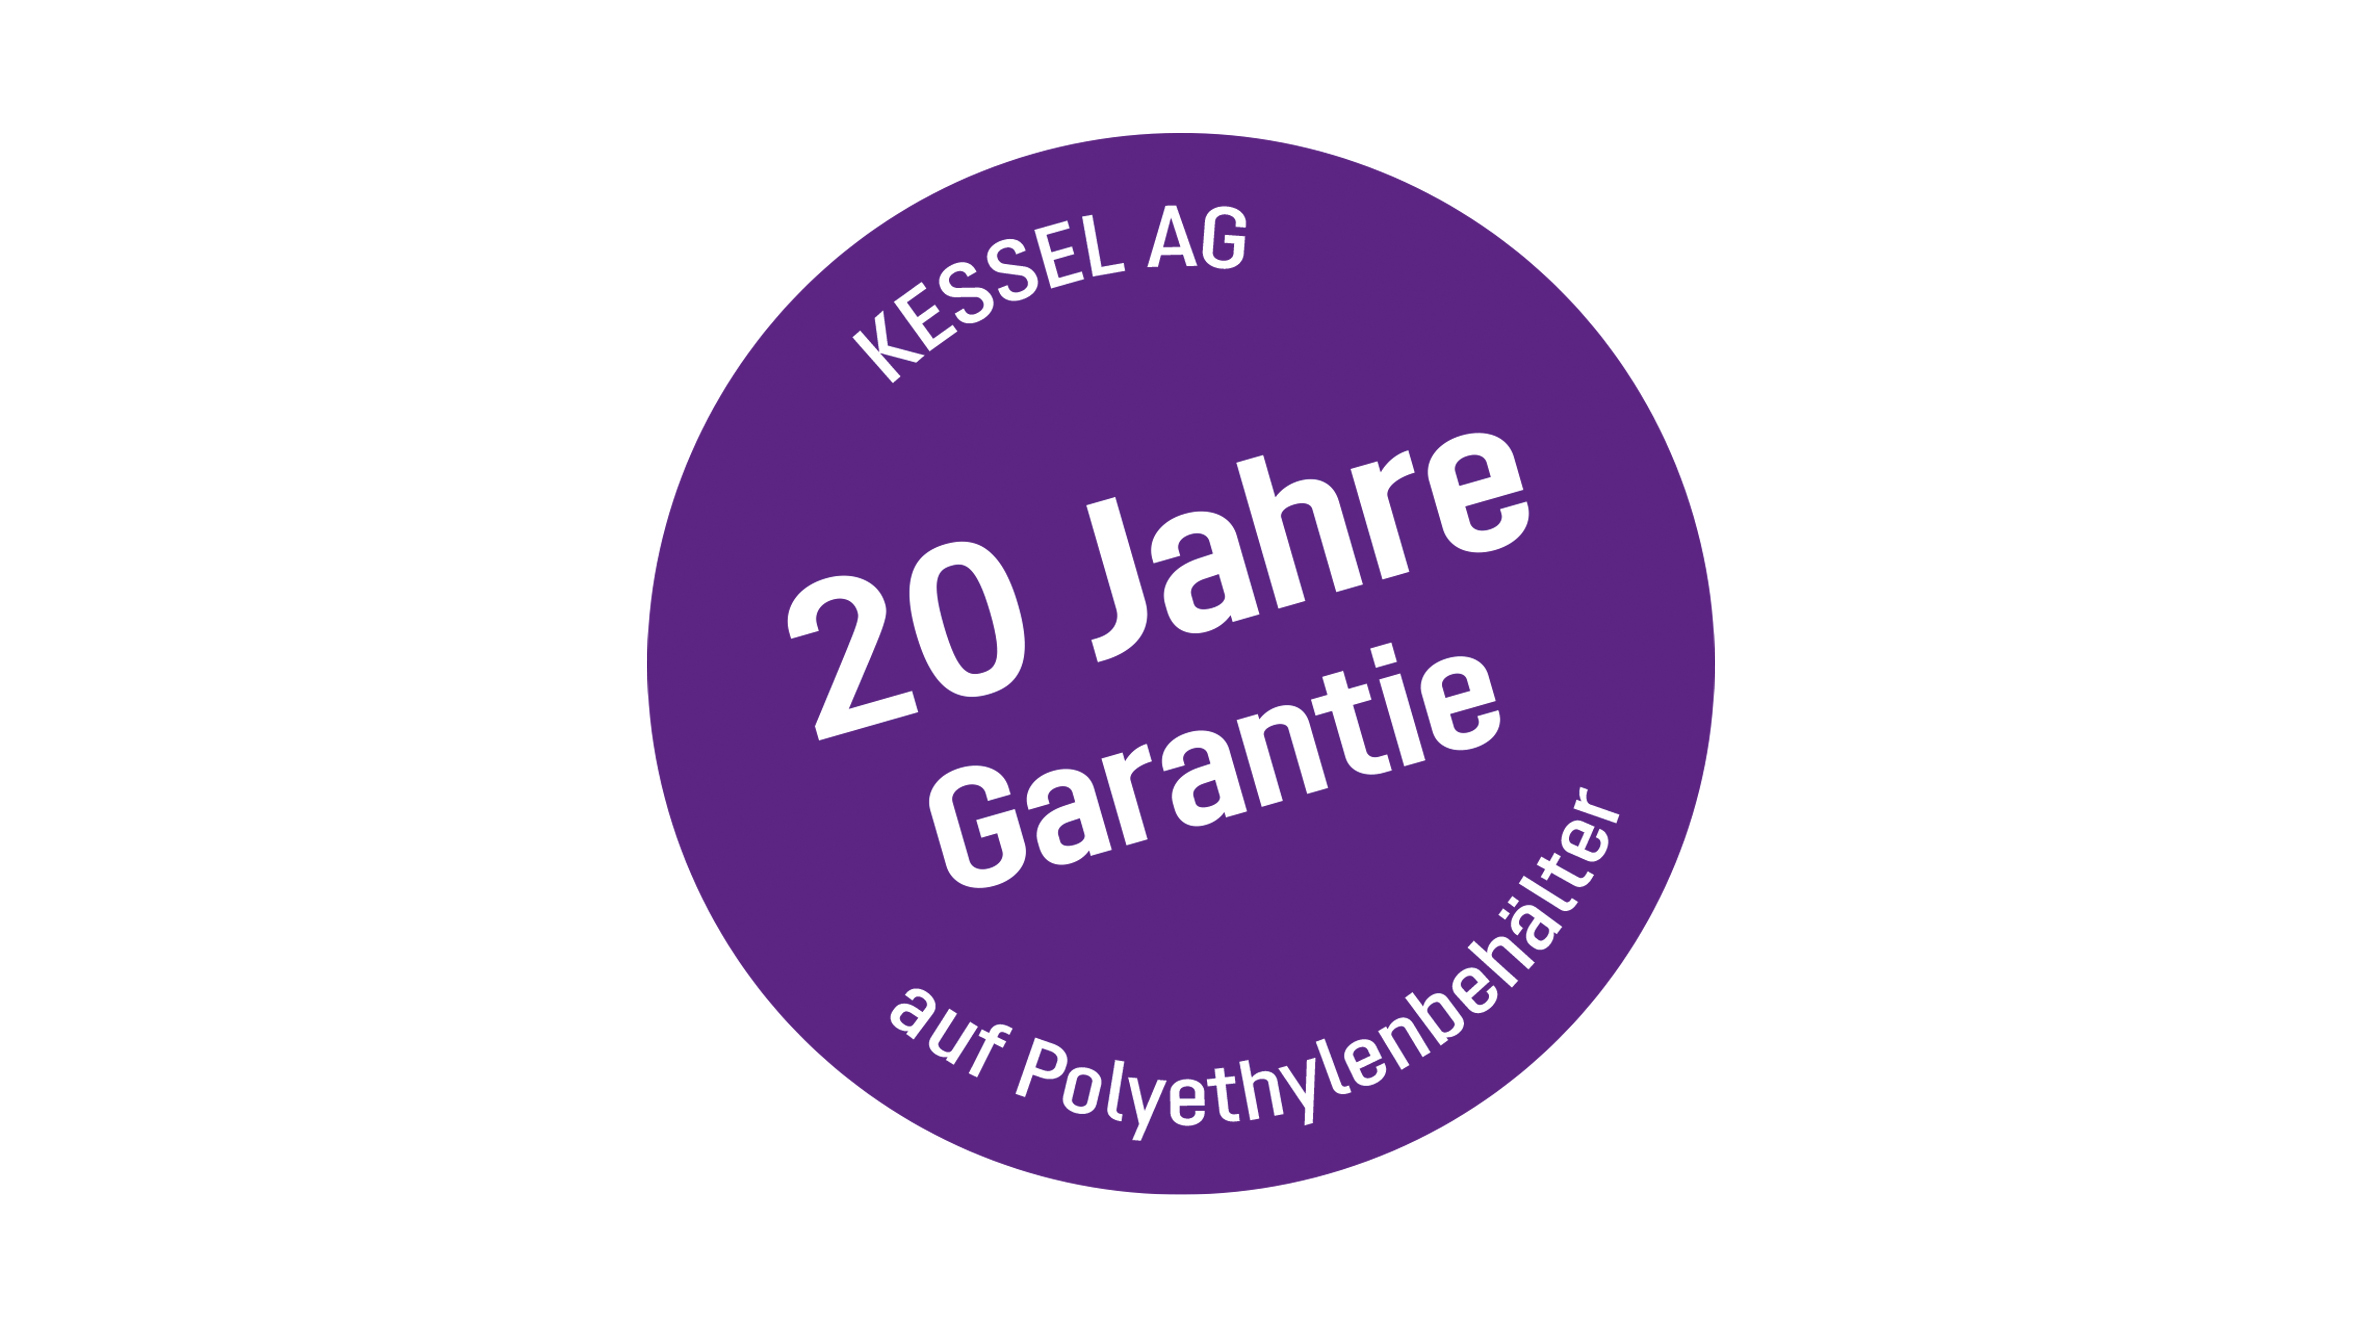 20 Jahre Garantie auf Polyethylenbehälter